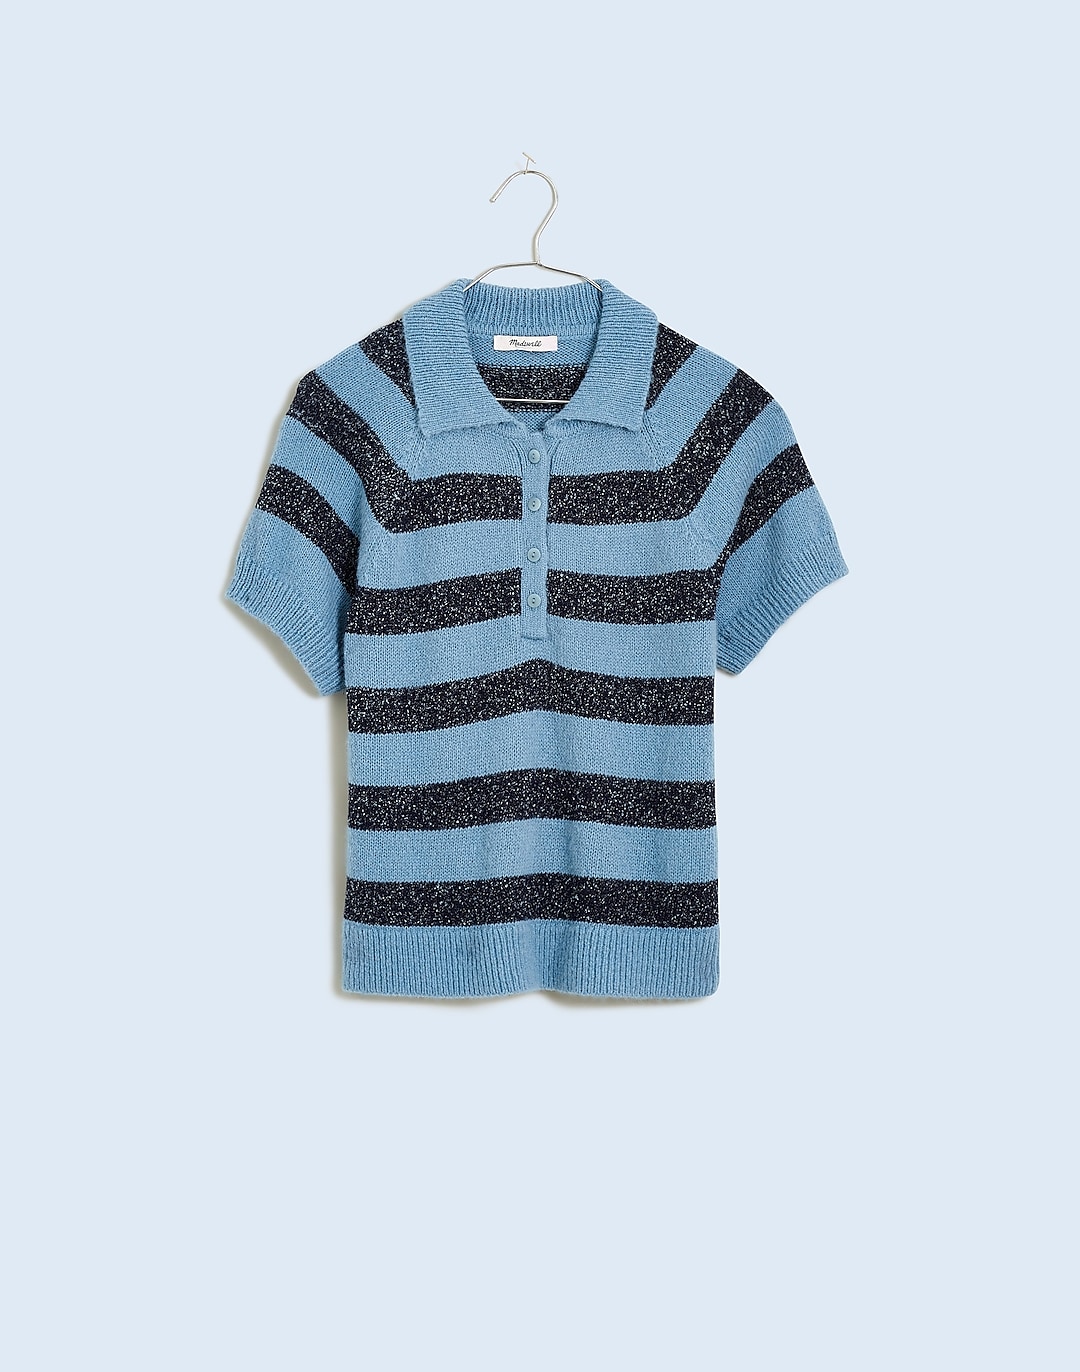 Raglan Polo Sweater Tee in Stripe | Madewell